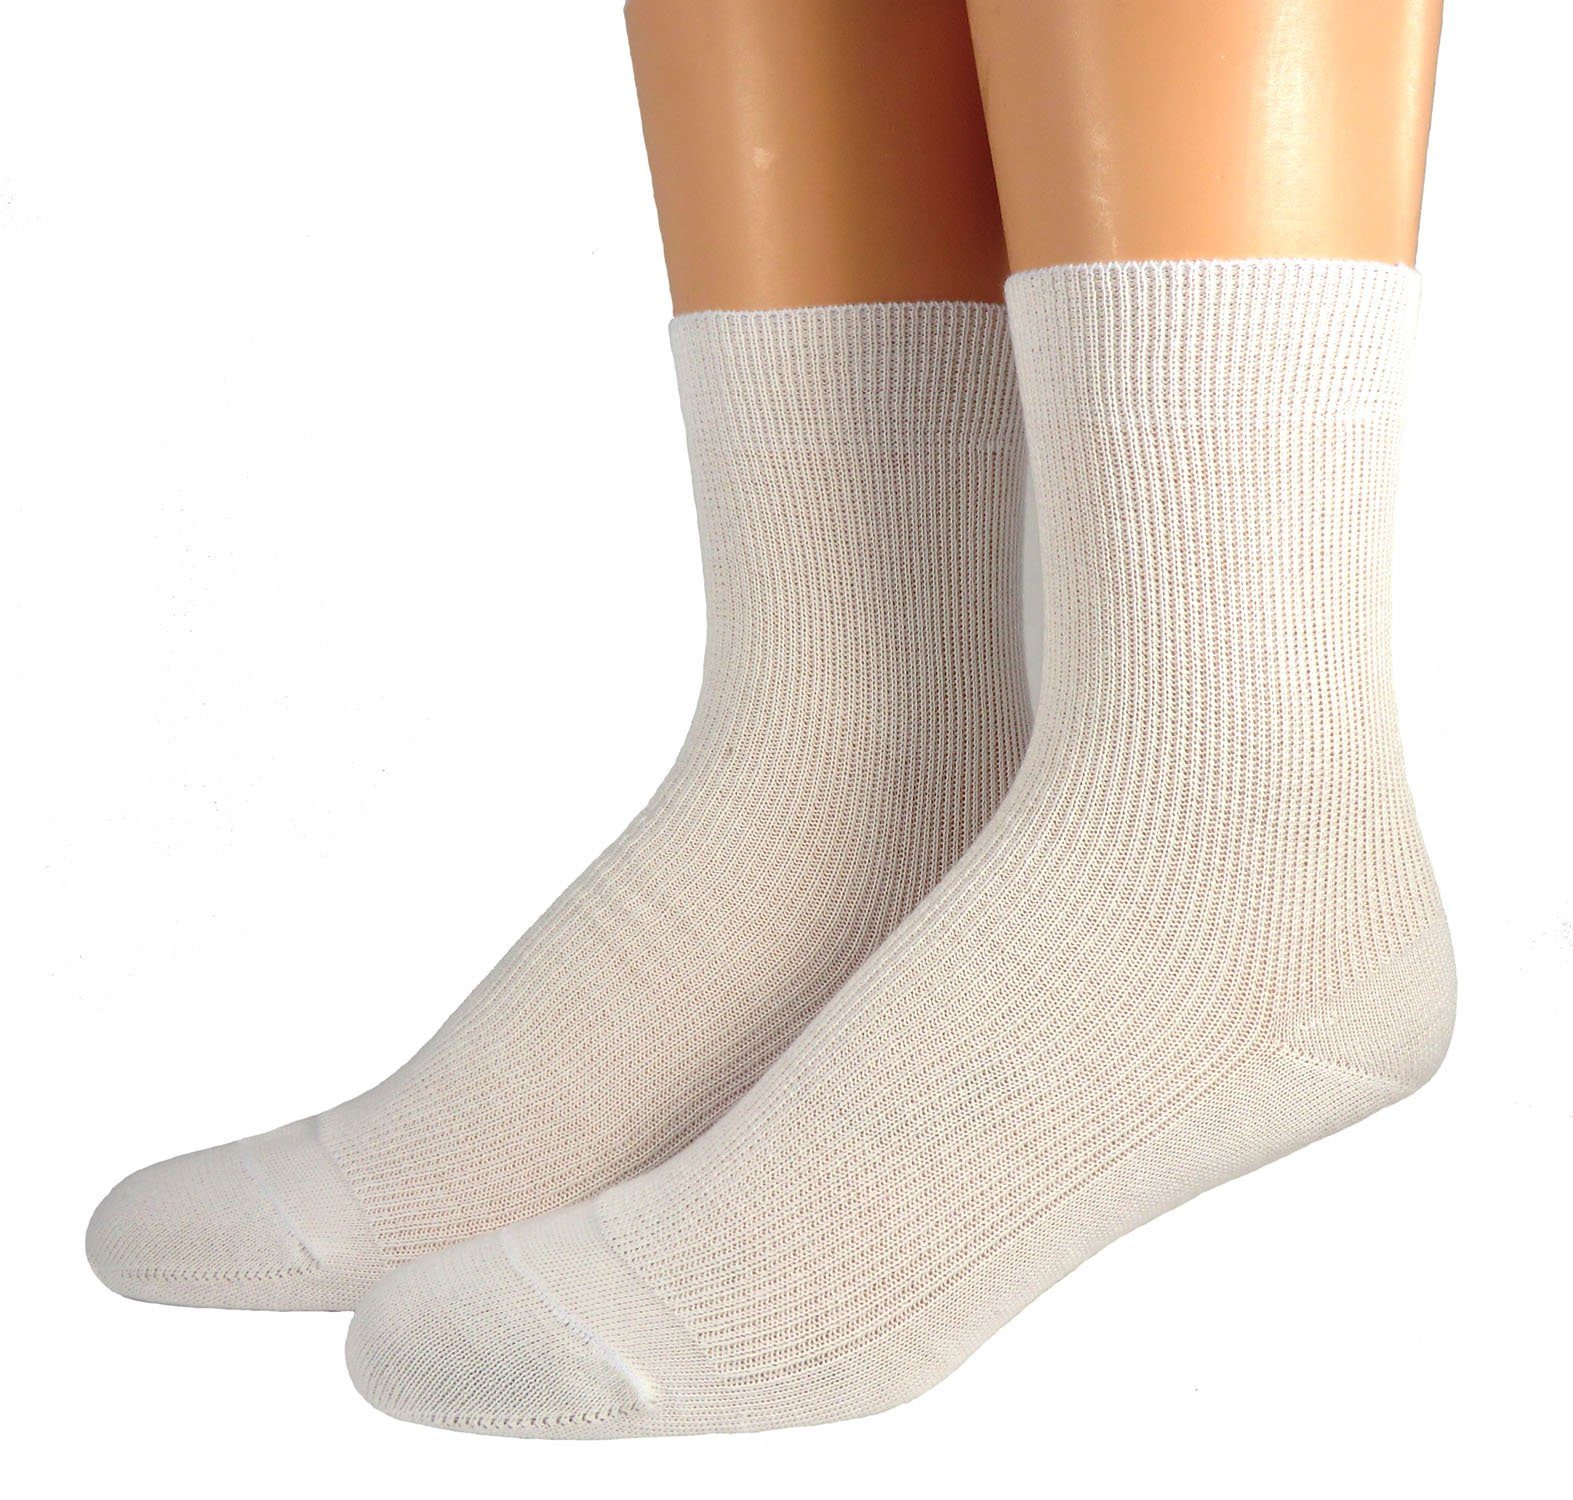 WERI SPEZIALS Strumpfhersteller GmbH Basicsocken Damen Socken 100% Bio Baumwolle